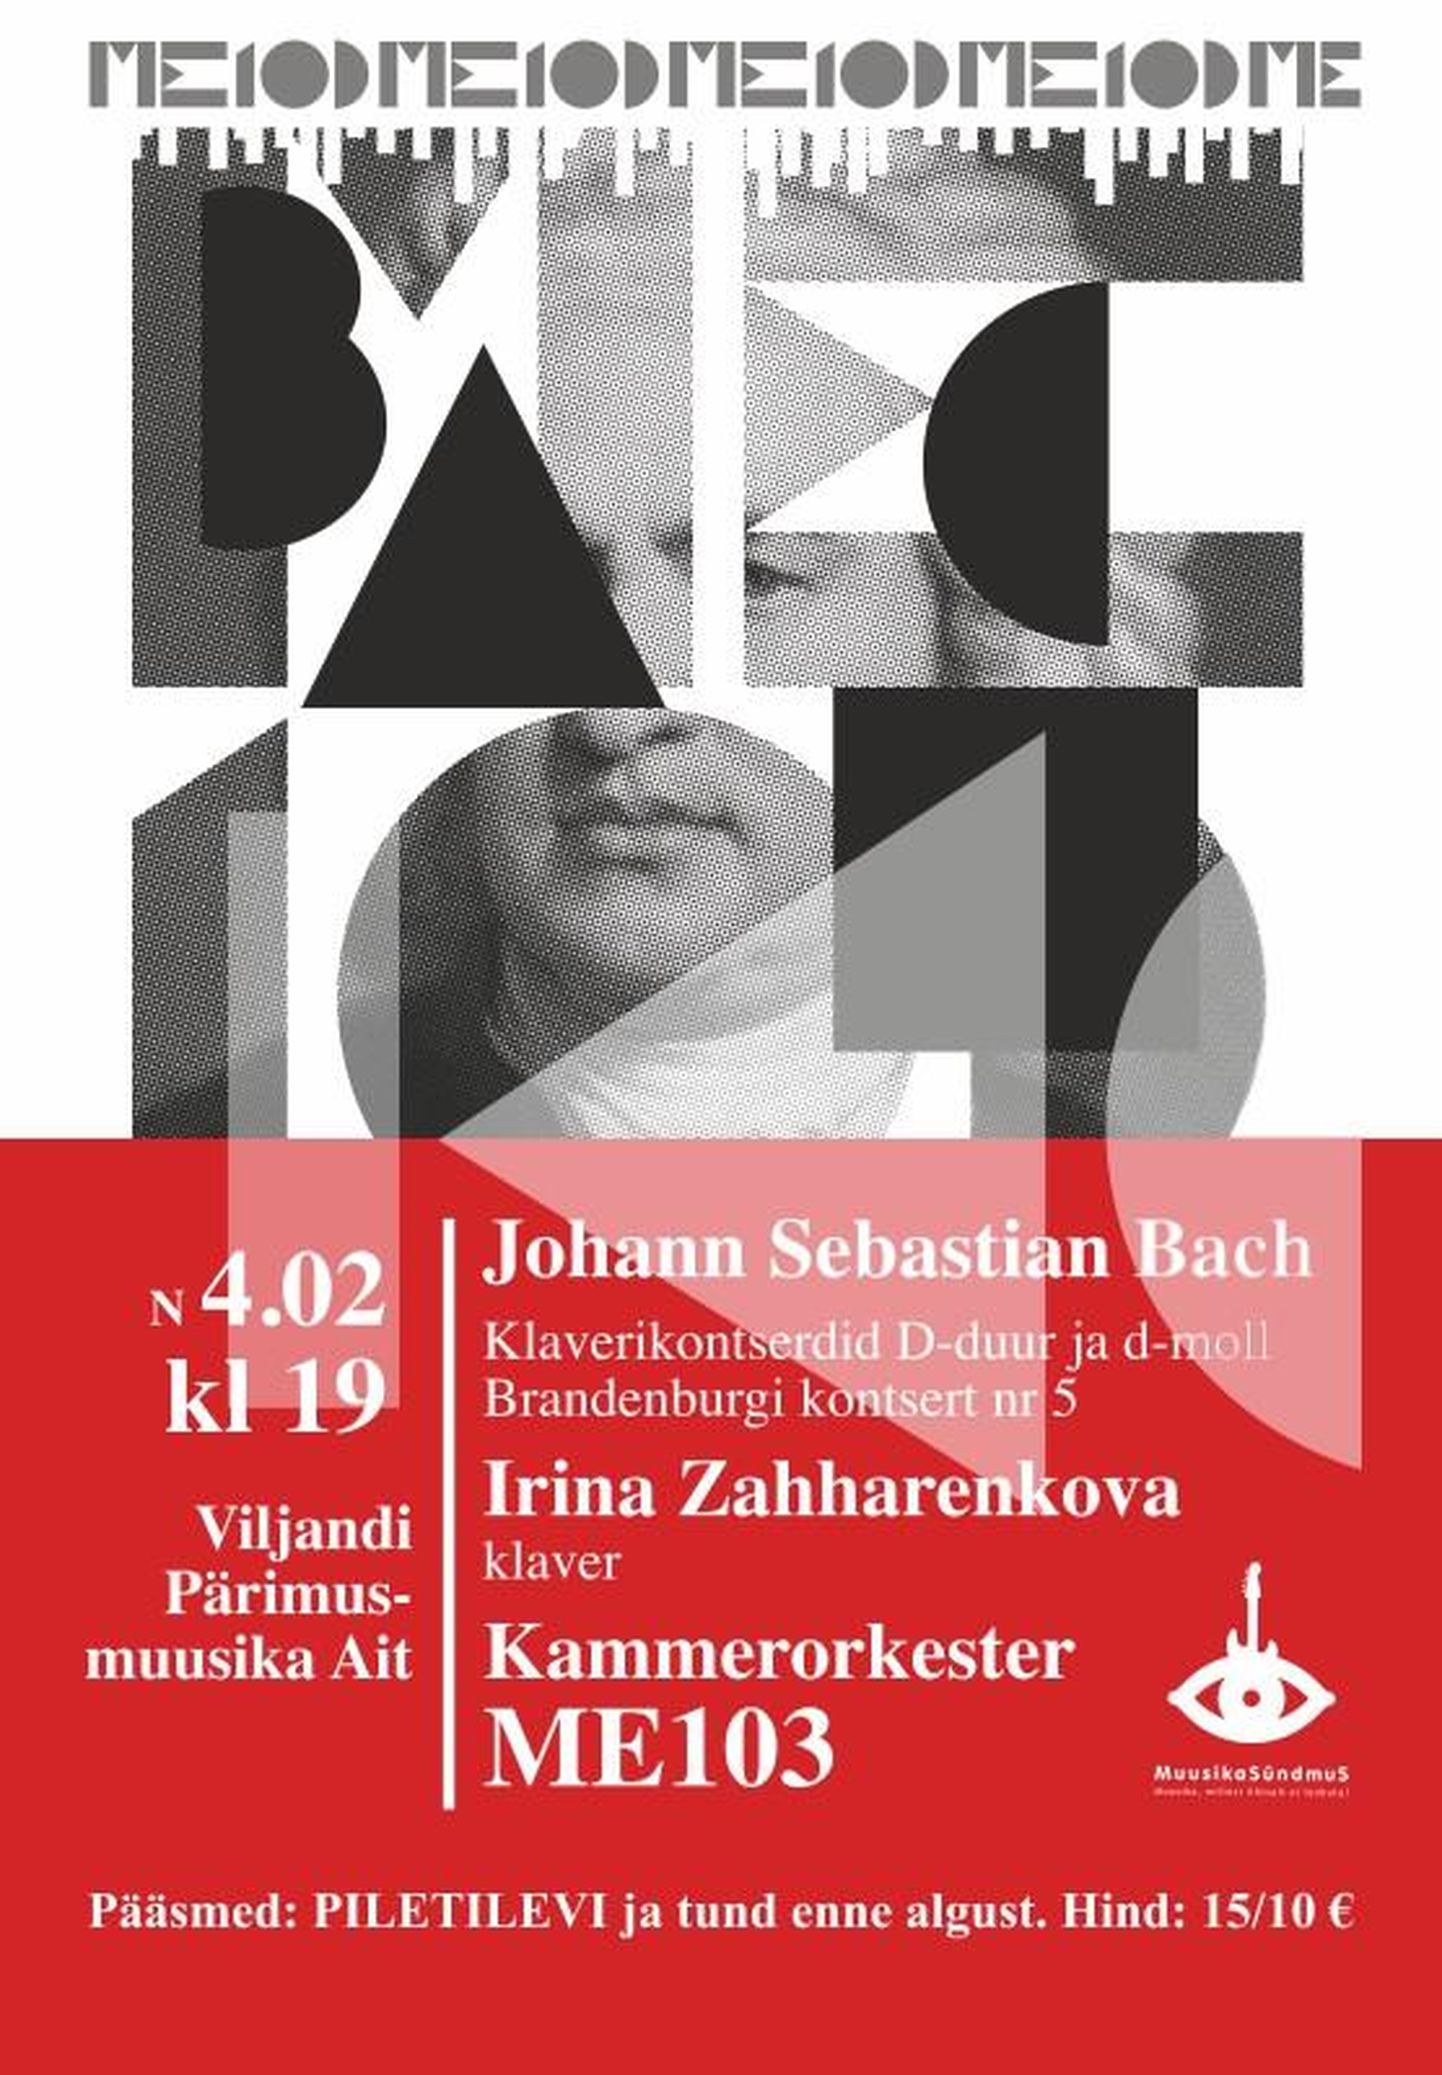 Viljandi pärimusmuusika aidas algab täna õhtul kontsert, kus kuuleb Johann Sebastian Bachi muusikat.